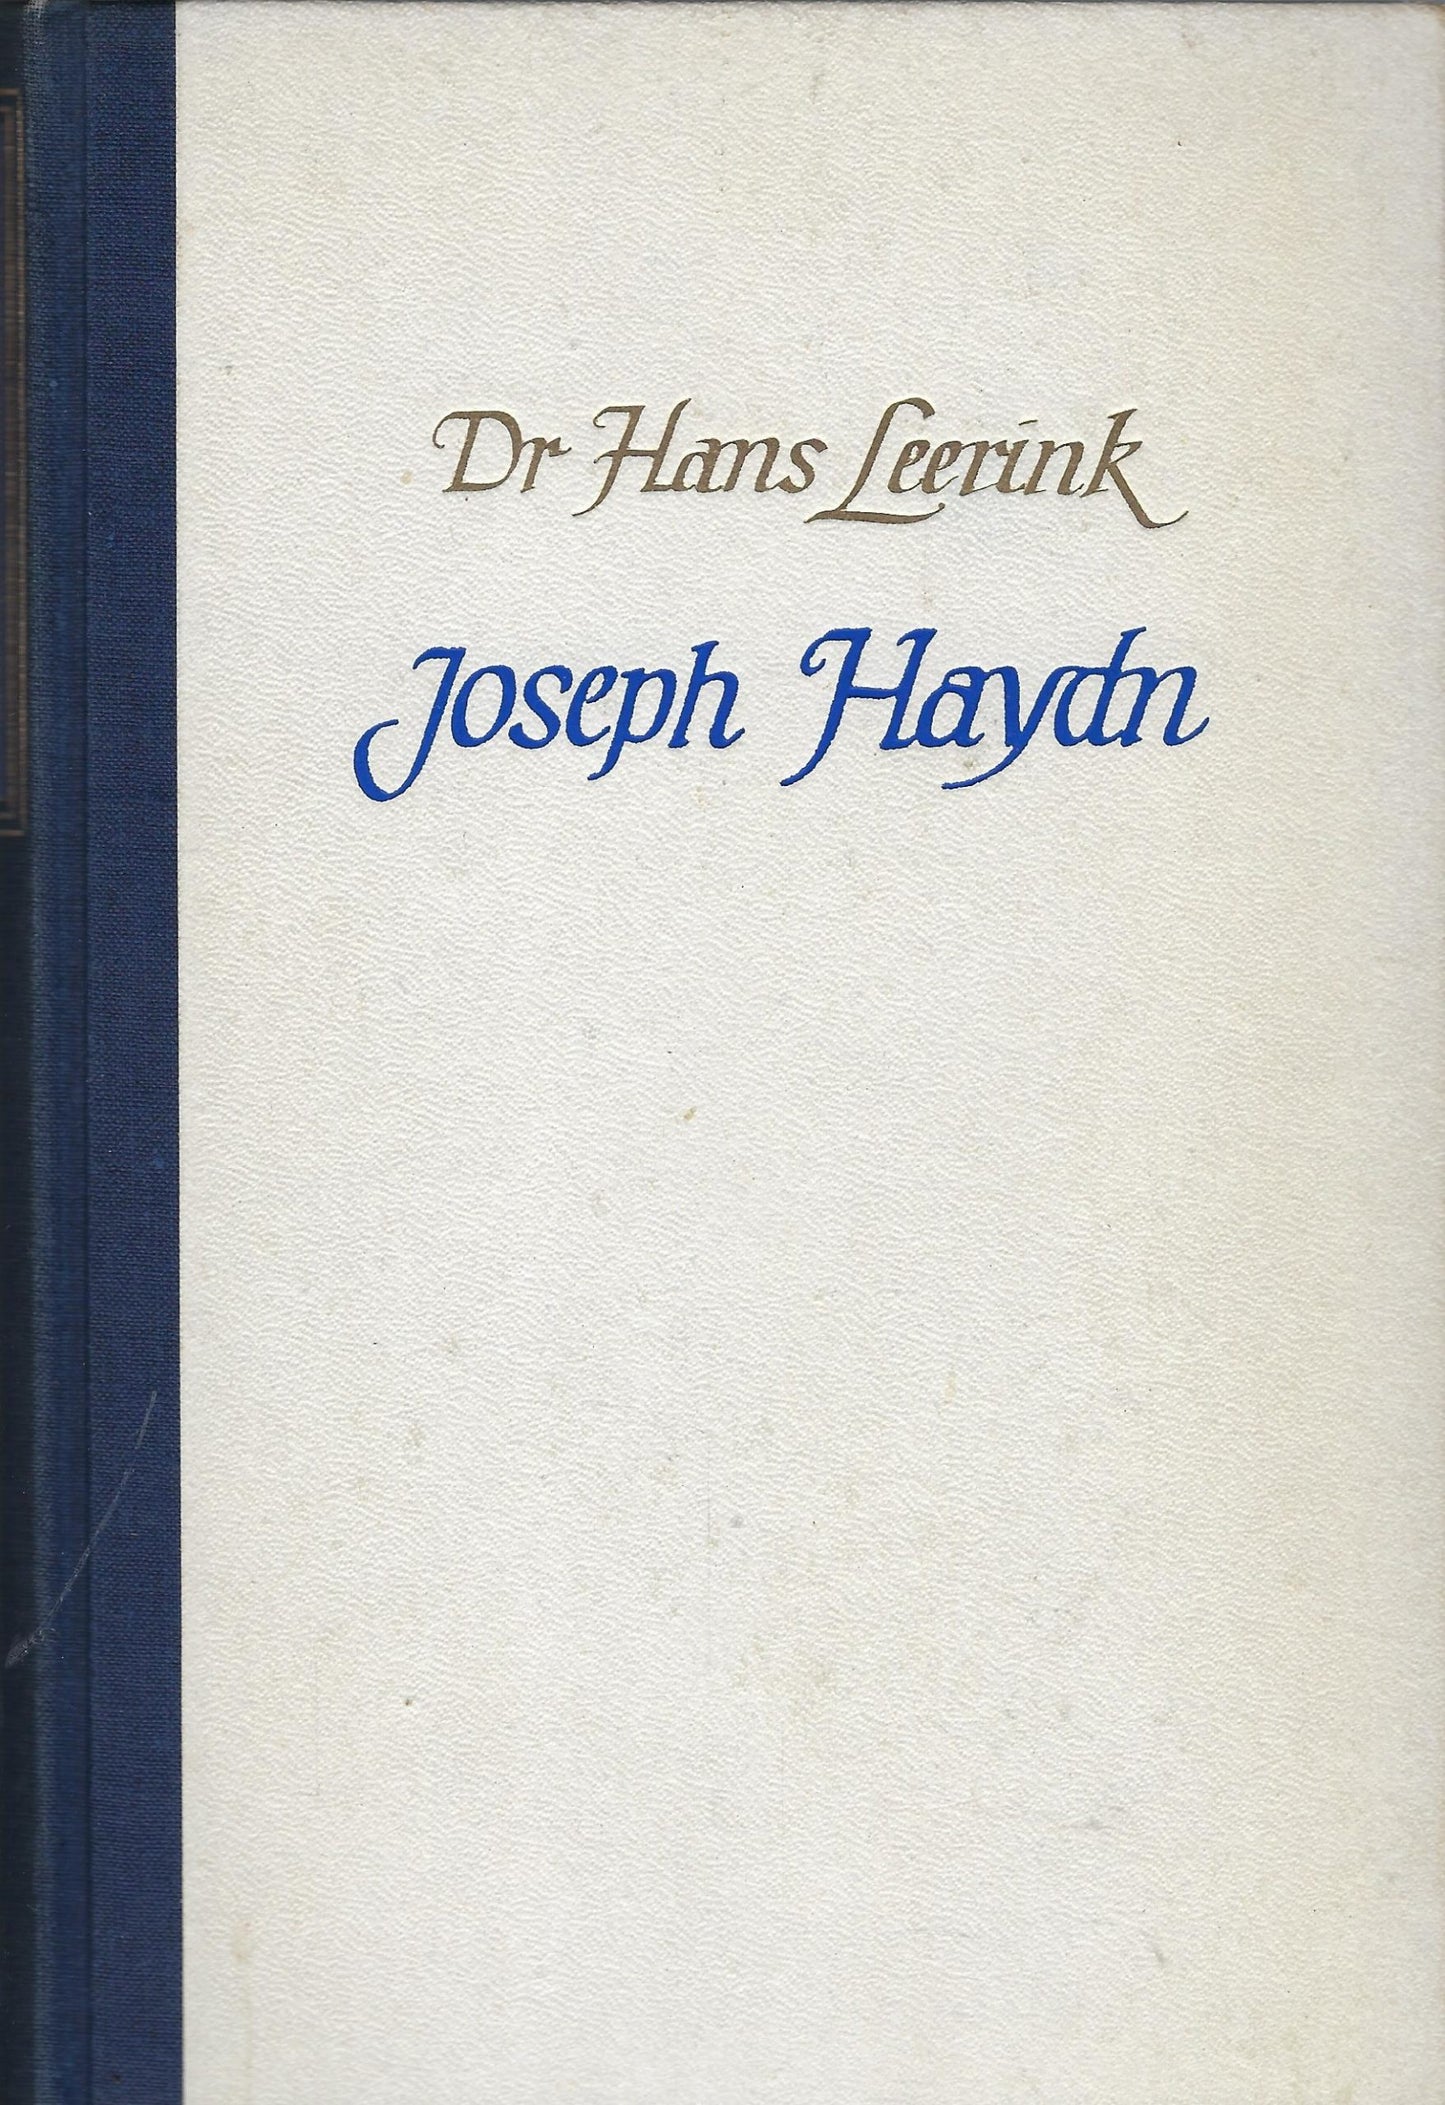 Joseph Haydn, een leven vol muziek